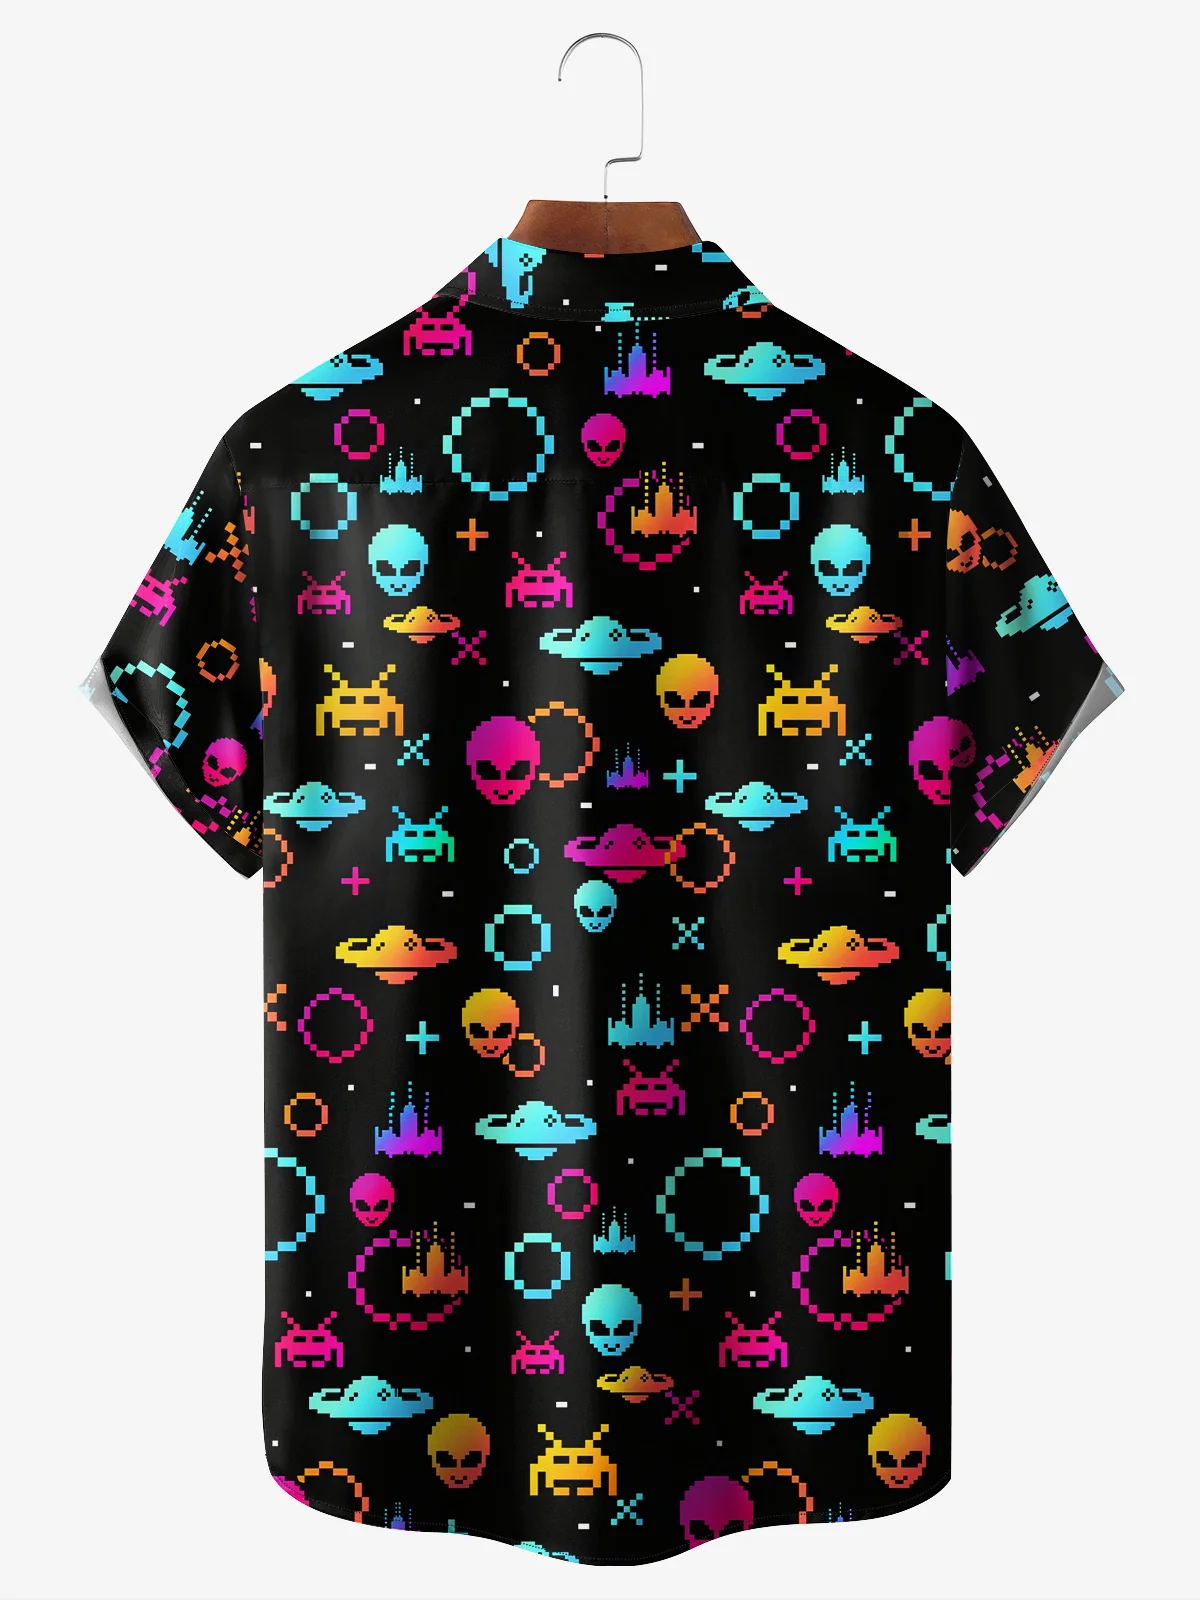 Hardaddy Moisture-wicking Breathable Alien Chest Pocket Resort Shirt